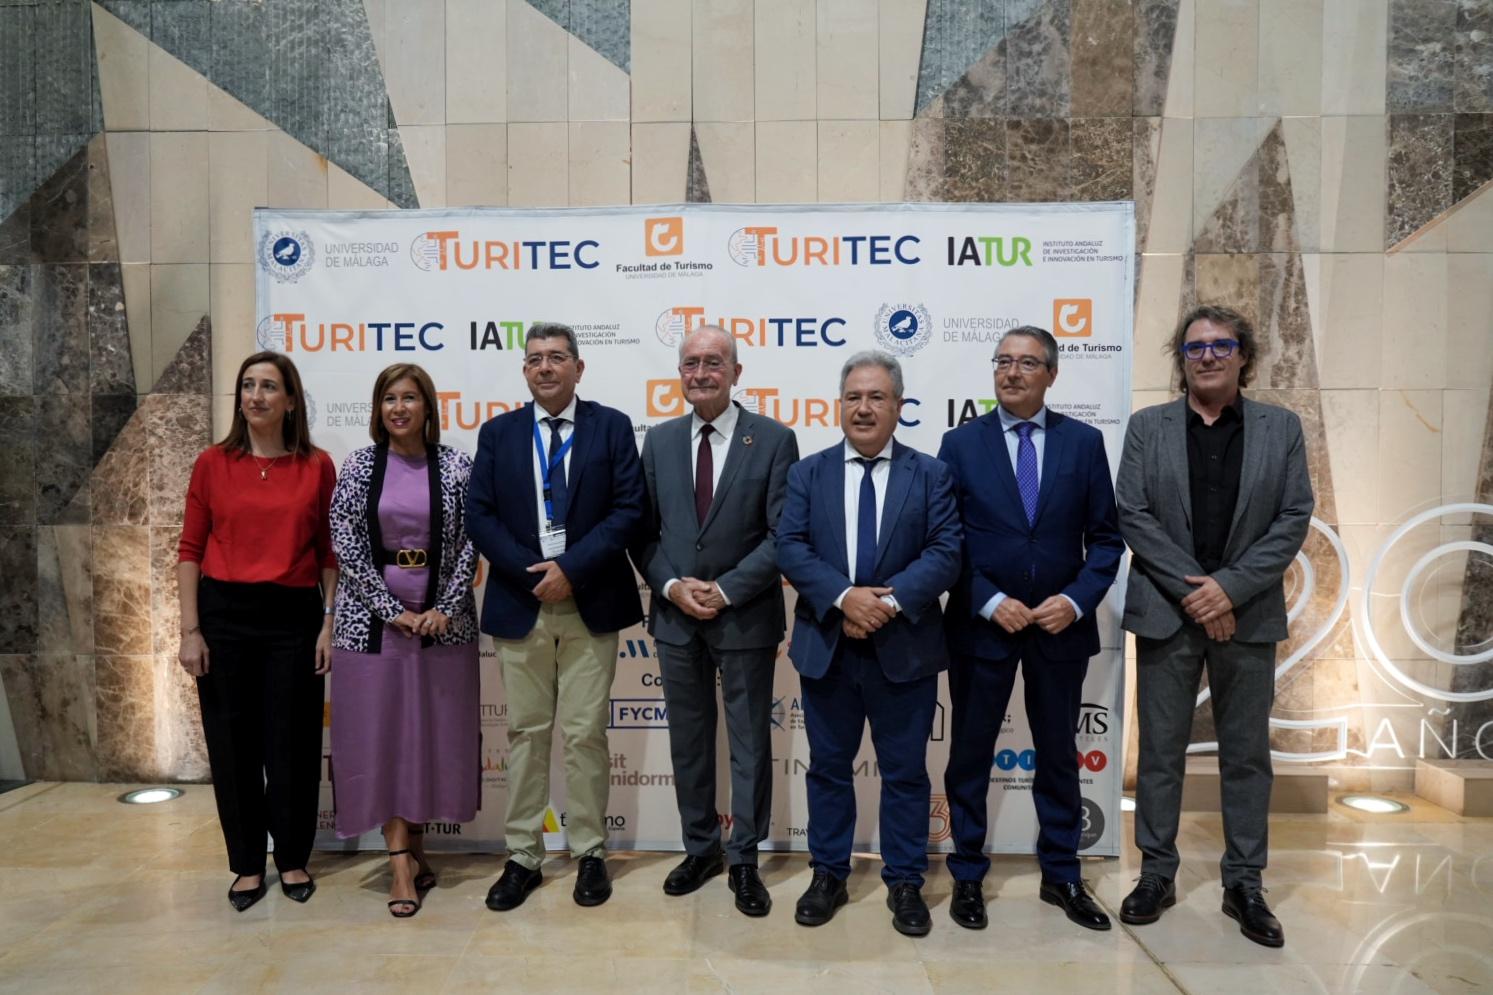 INAUGURACIÓN DEL XIV CONGRESO INTERNACIONAL DE TURISMO Y TECNOLOGÍAS TIC (TURITEC)